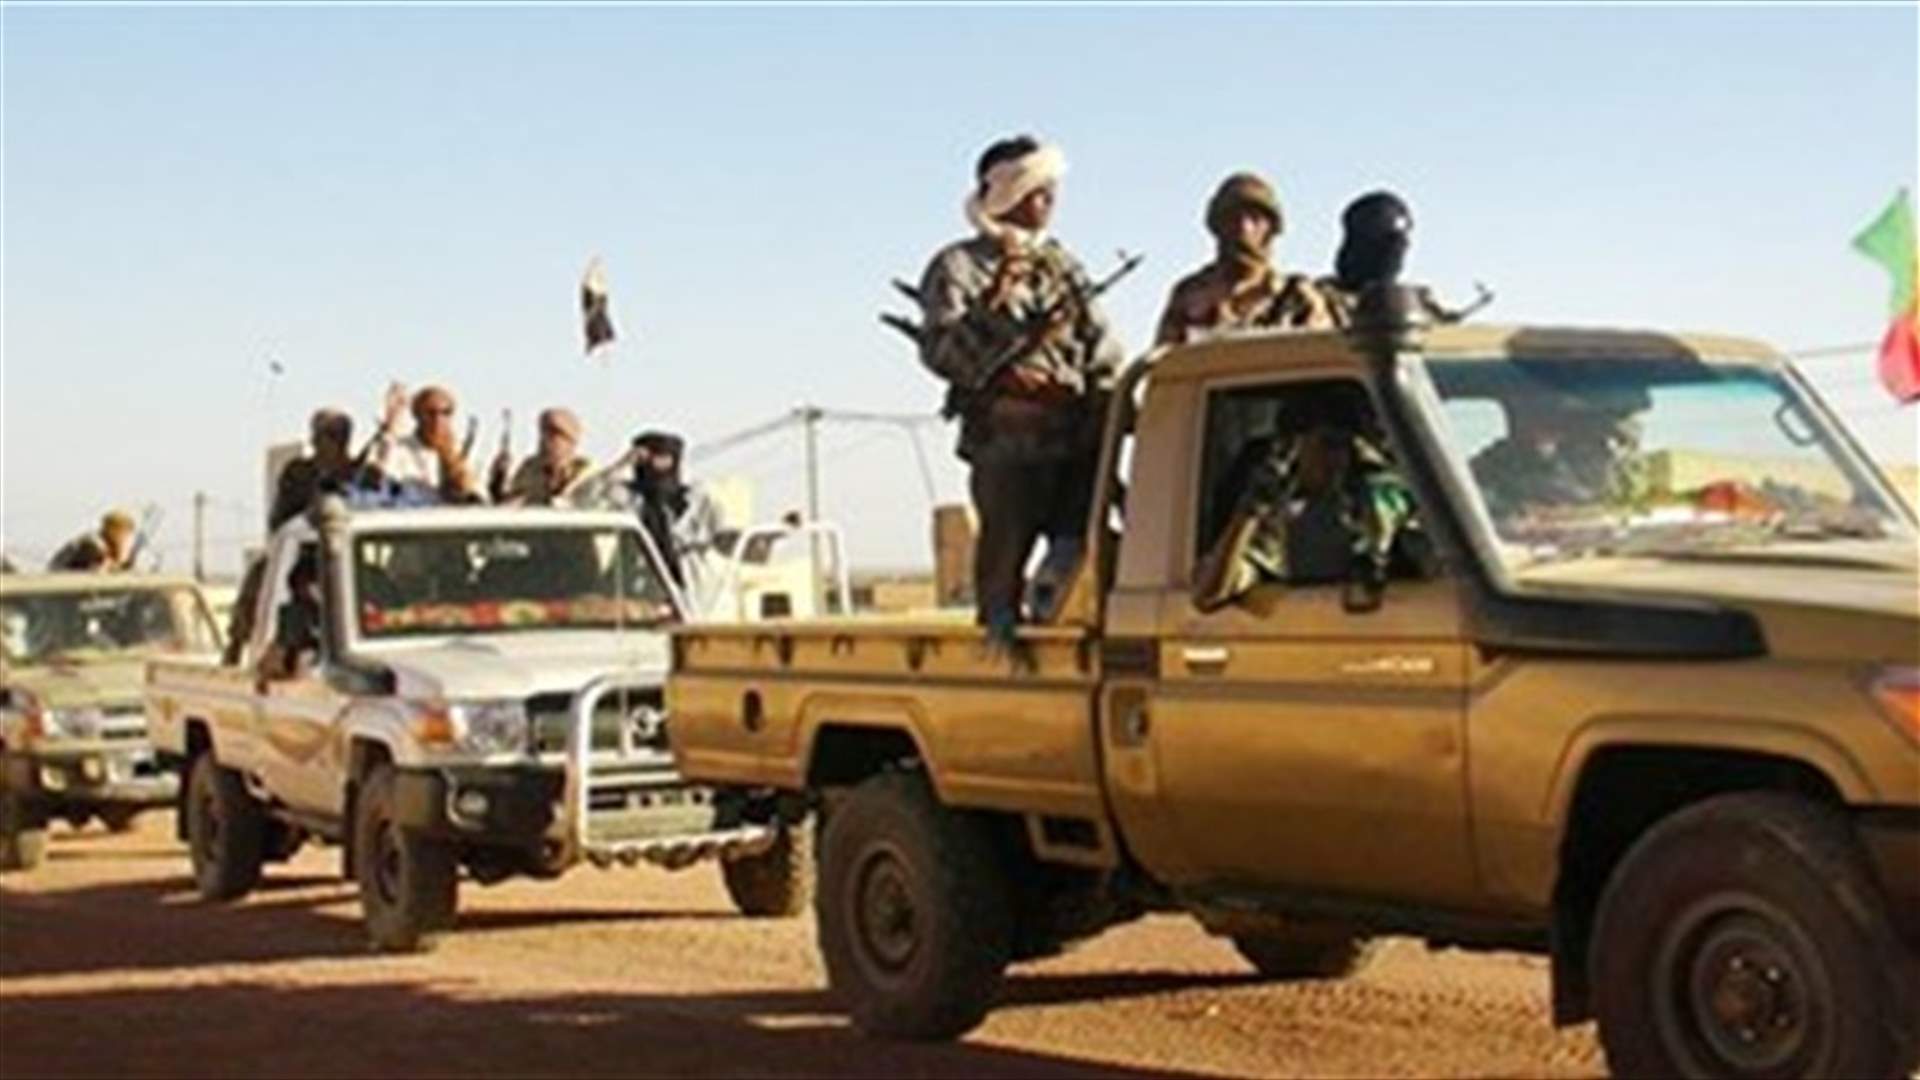 Explosion kills Tuareg leader outside north Mali UN camp